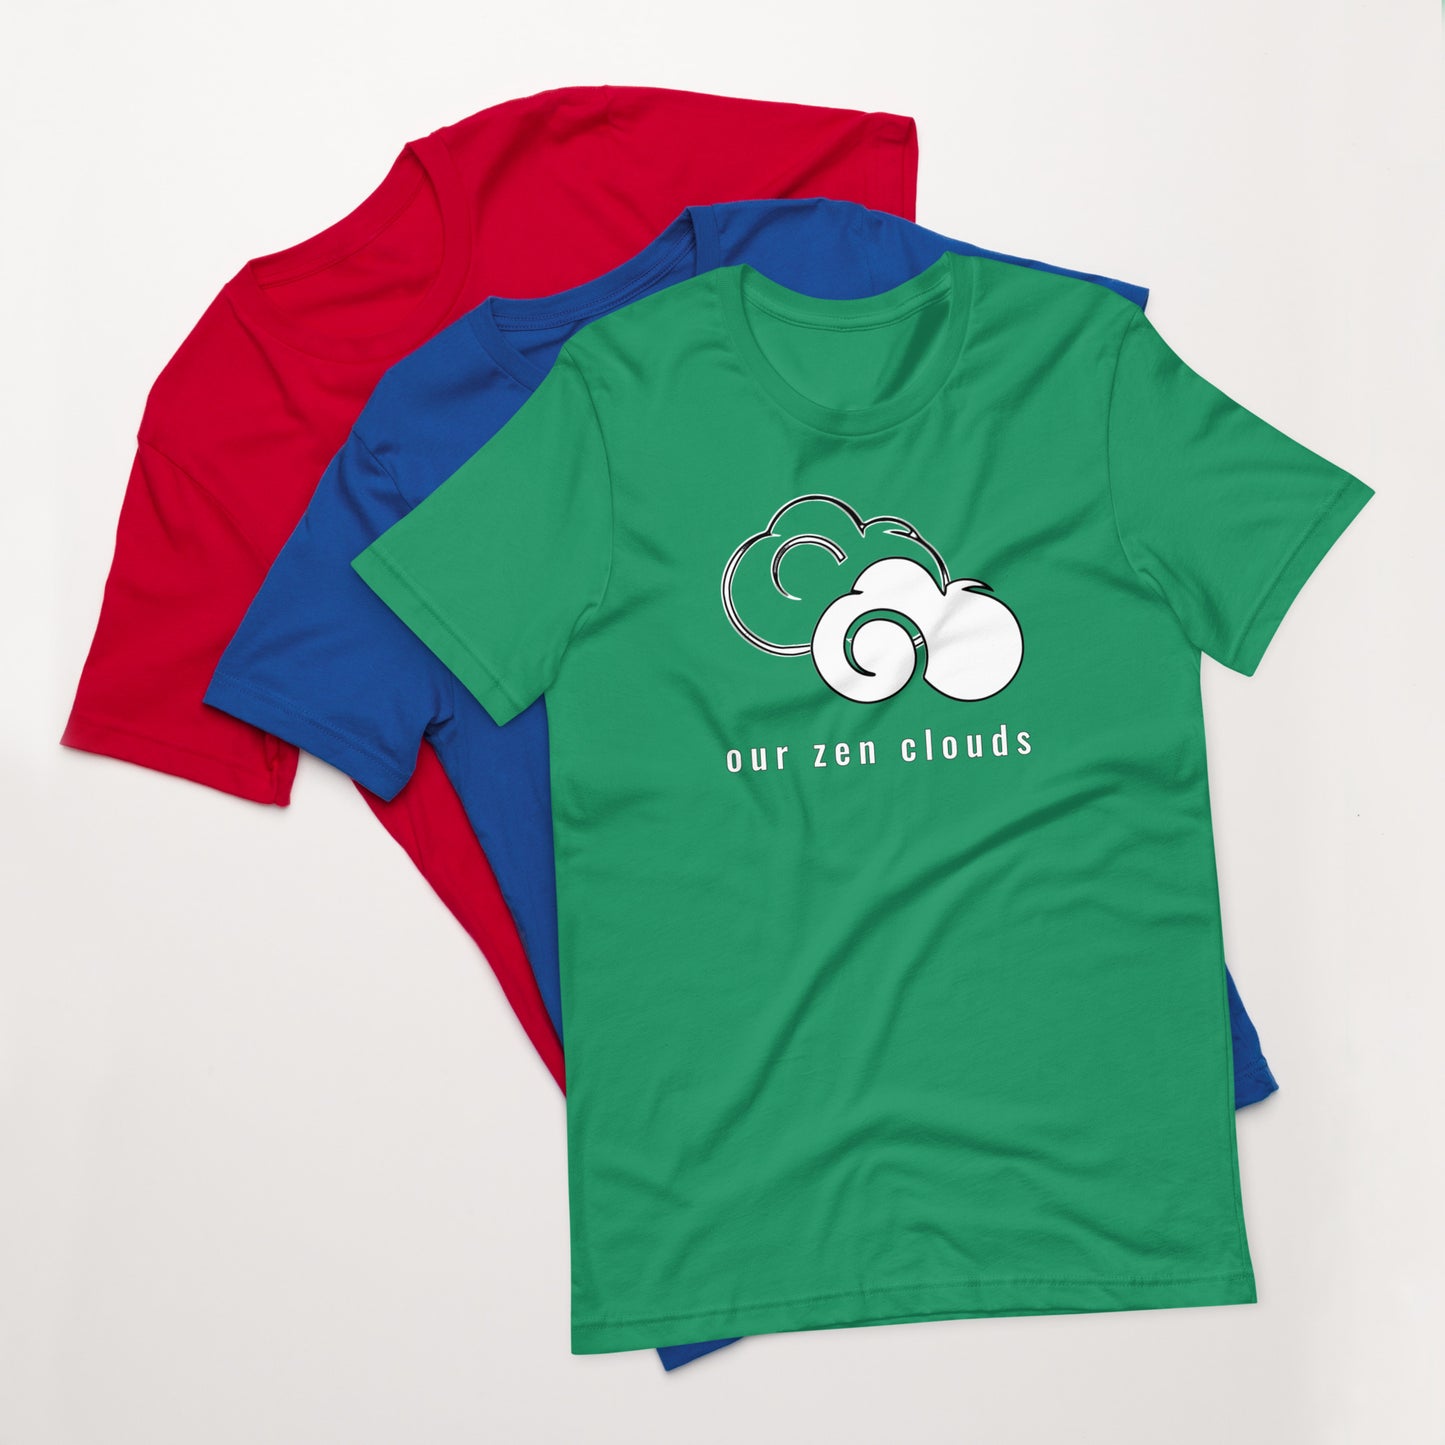 Our Zen Clouds T-Shirt